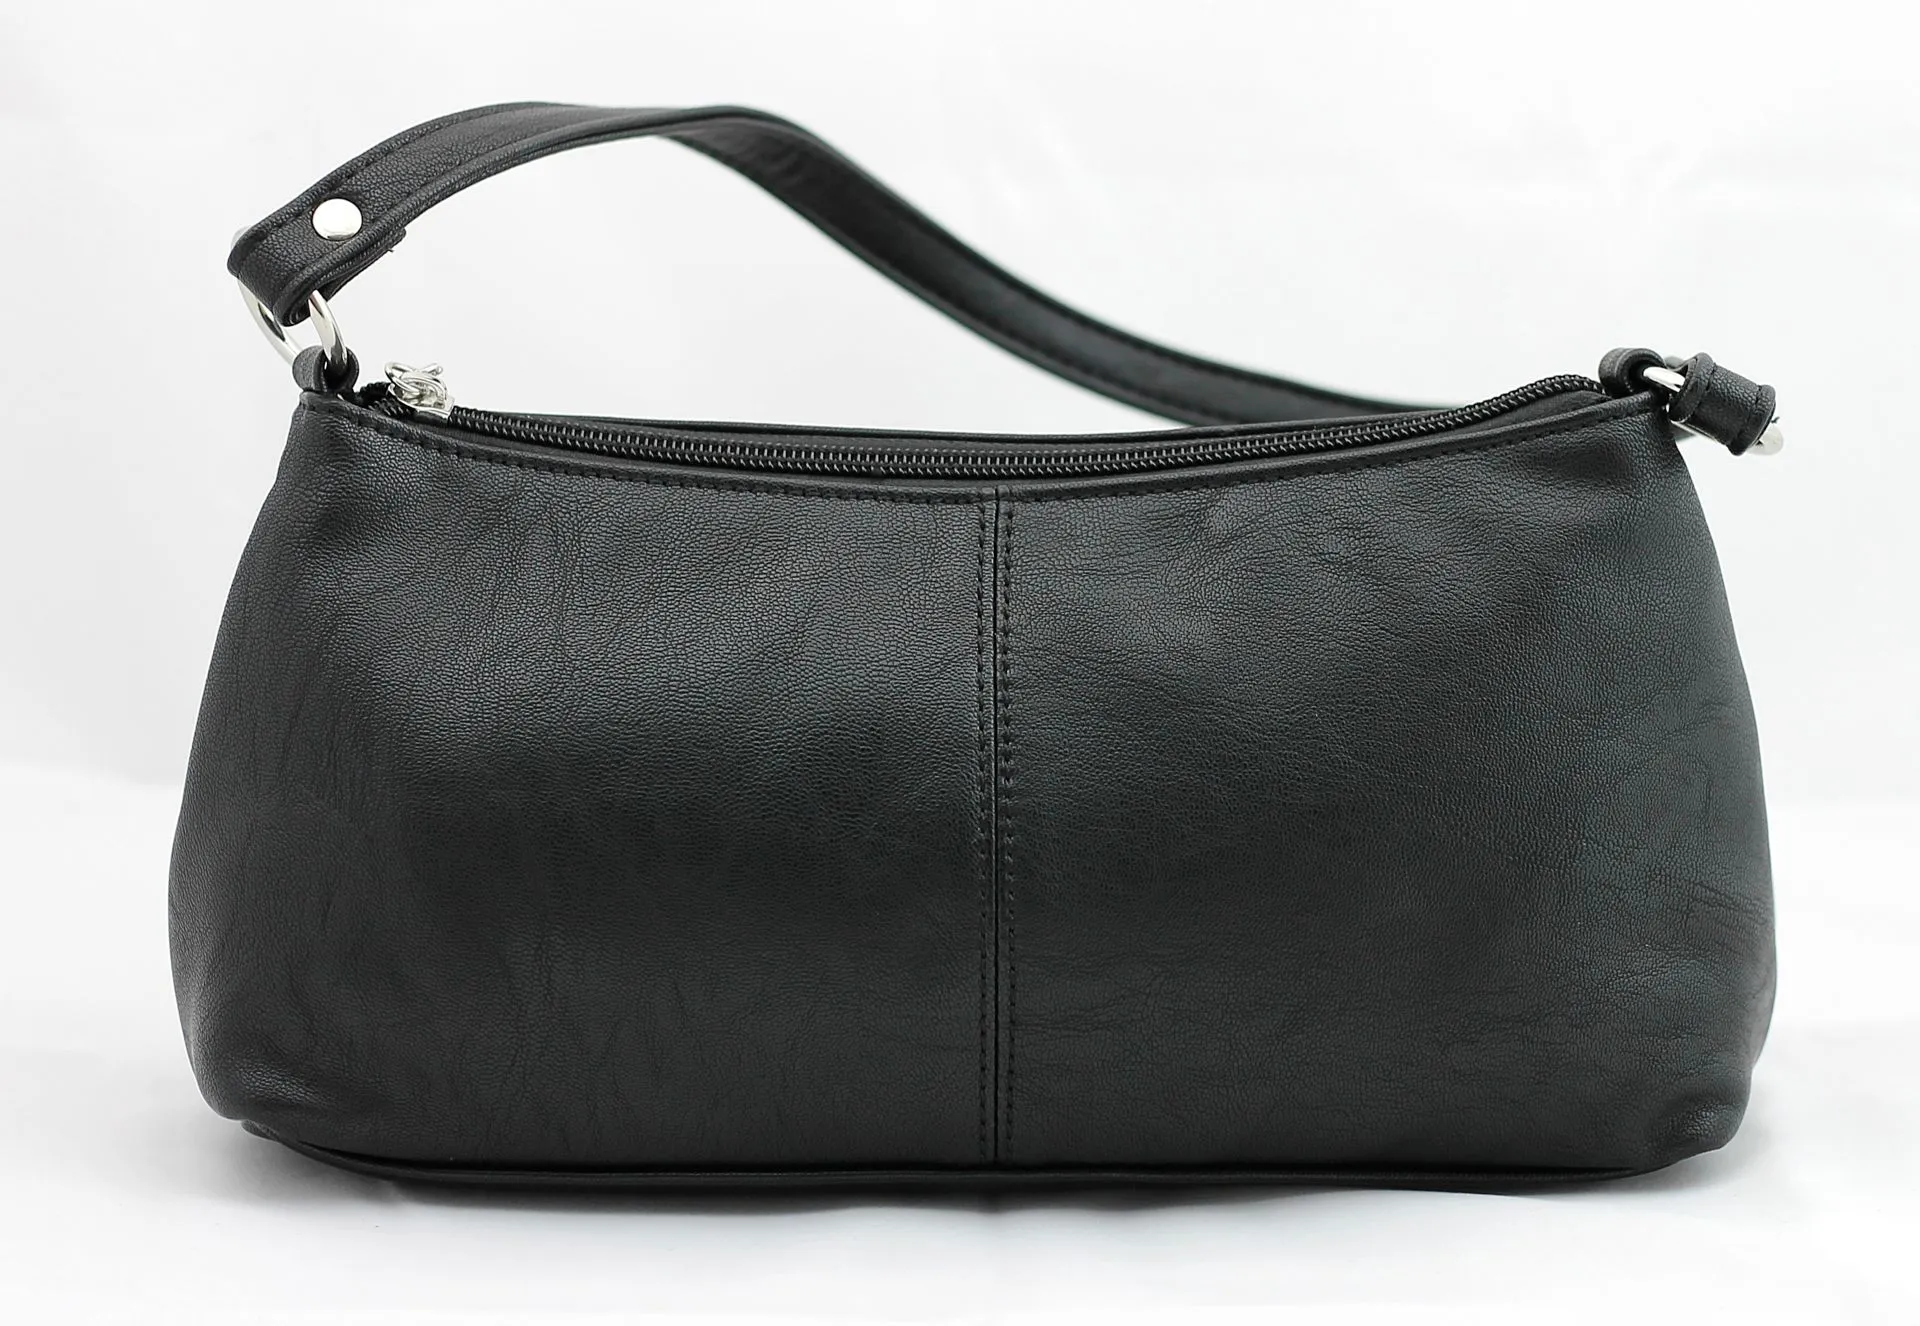 Brunelli naisten käsilaukku 3923R - 1